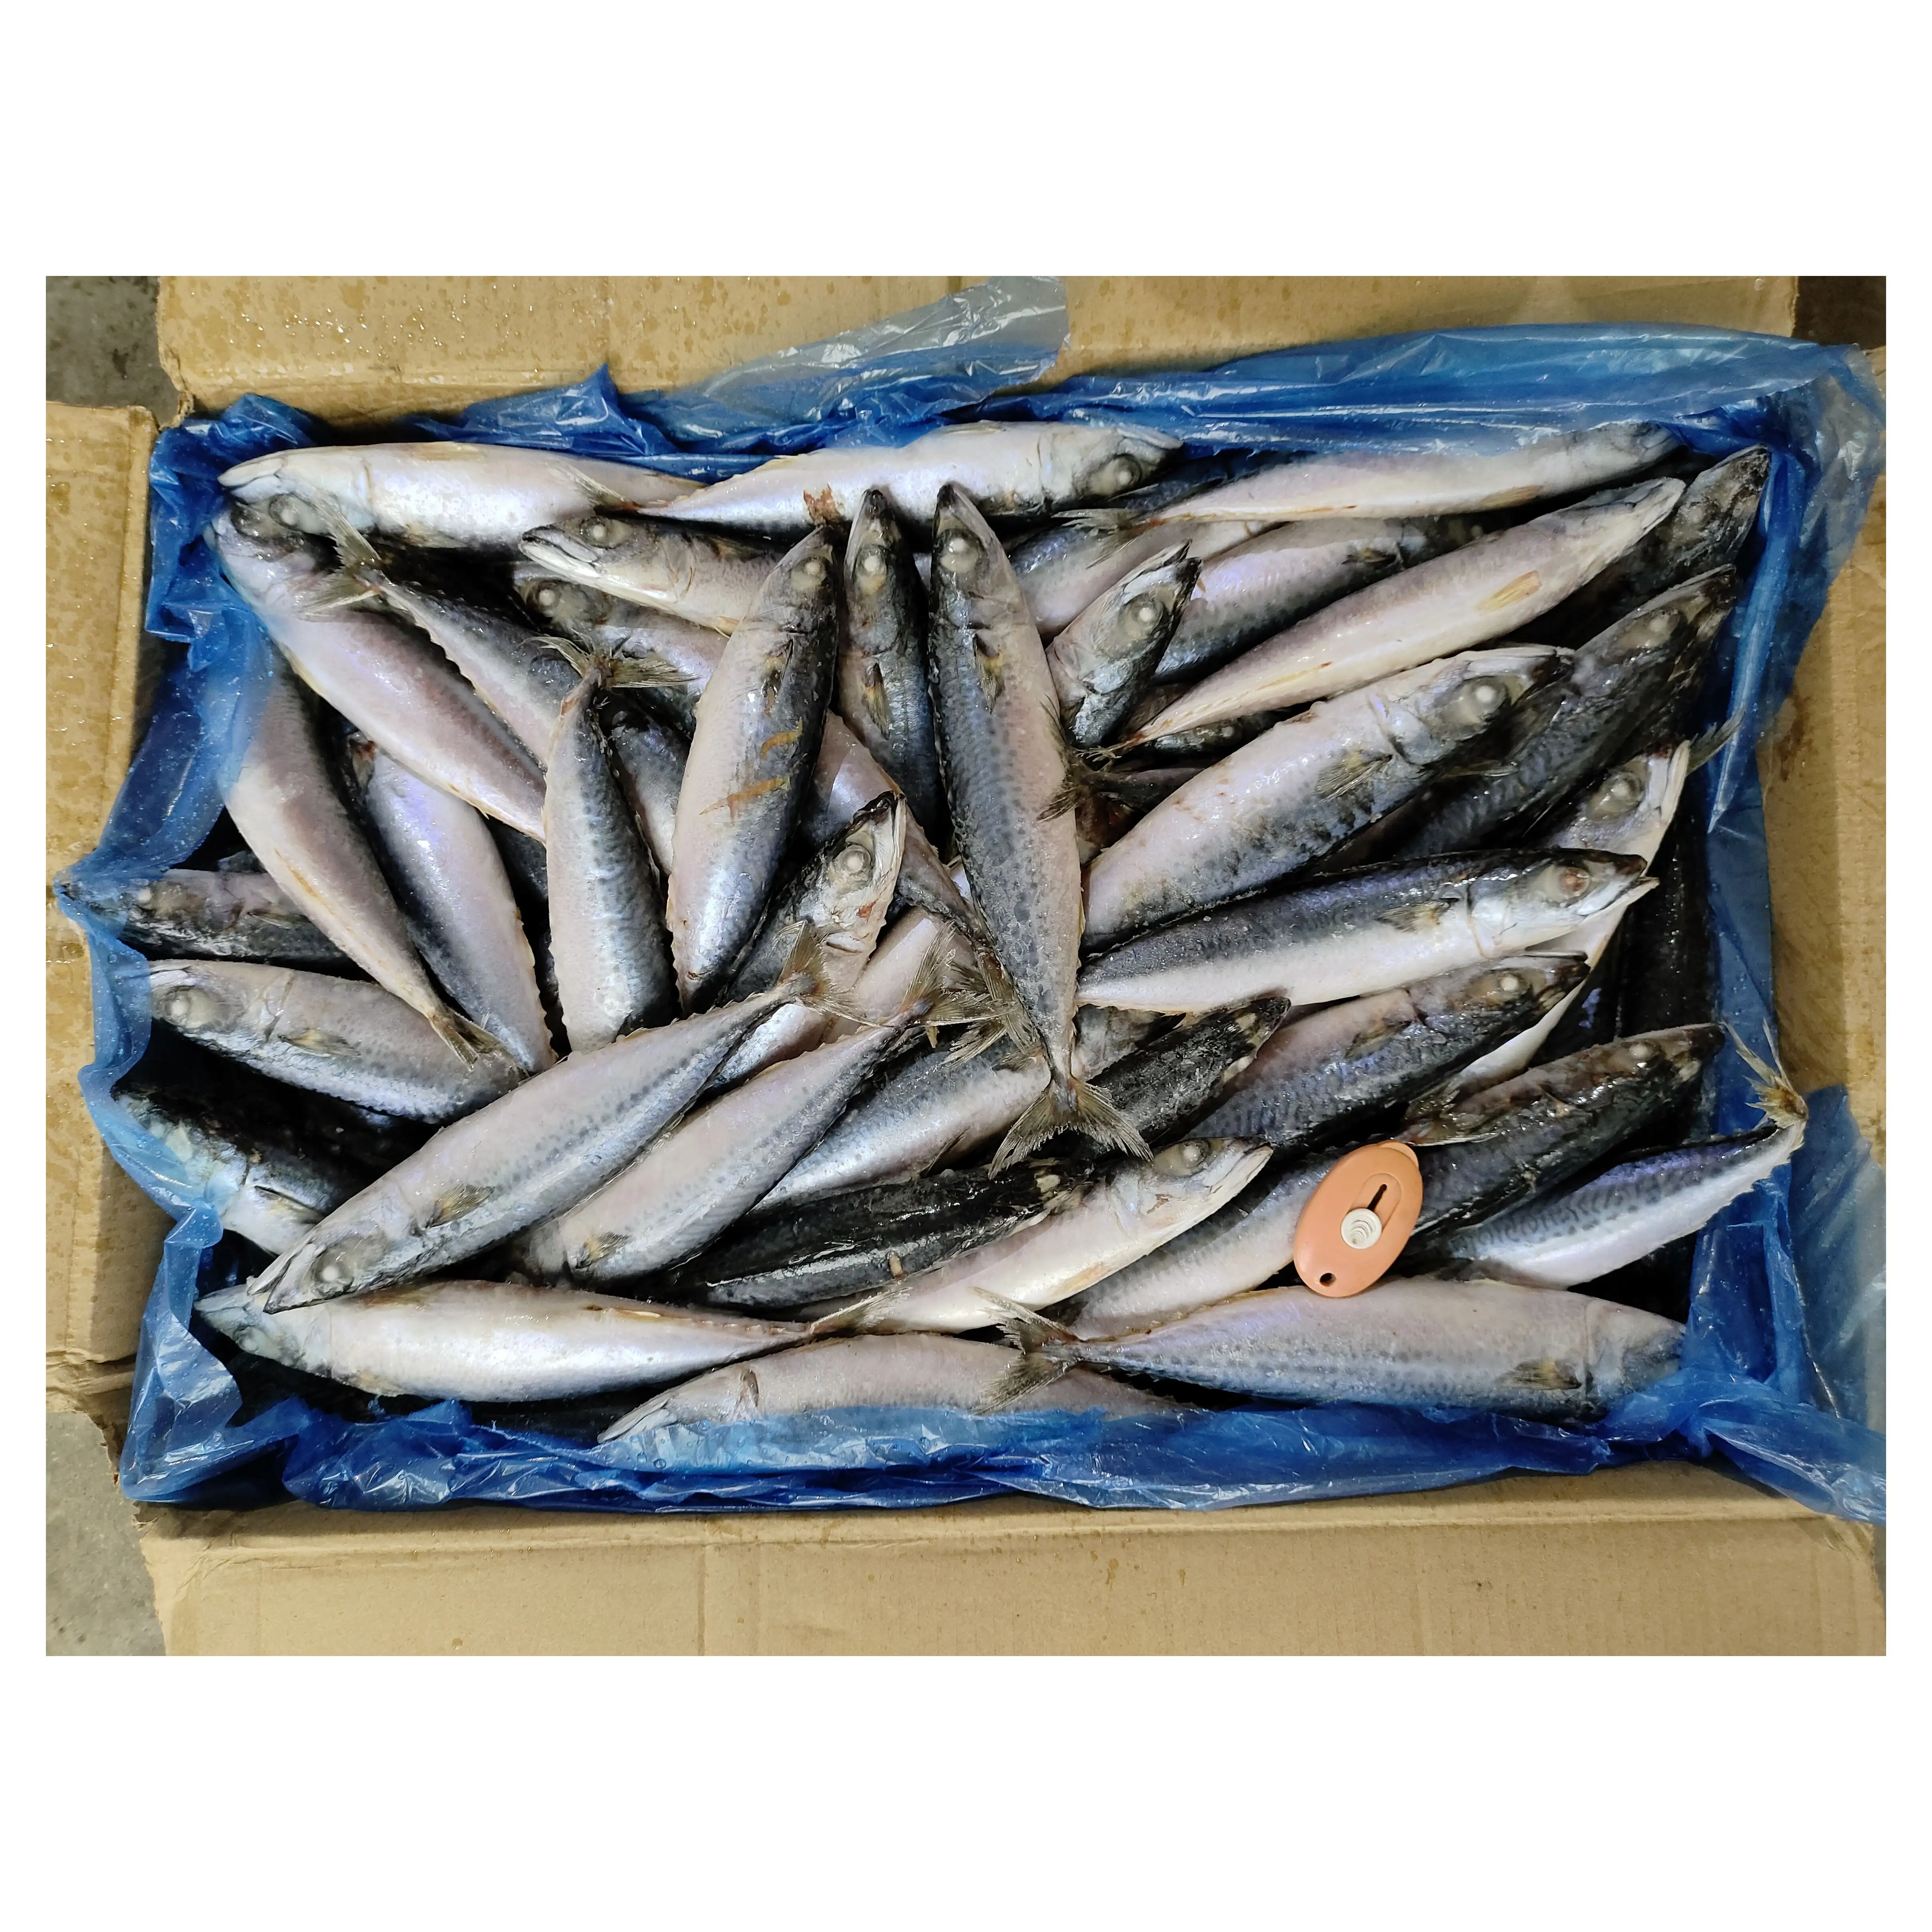 F2401 nouveau stock maquereau congelé fabricant rond entier 100-200G SCOMBER JAPONICUS poisson maquereau du pacifique congelé